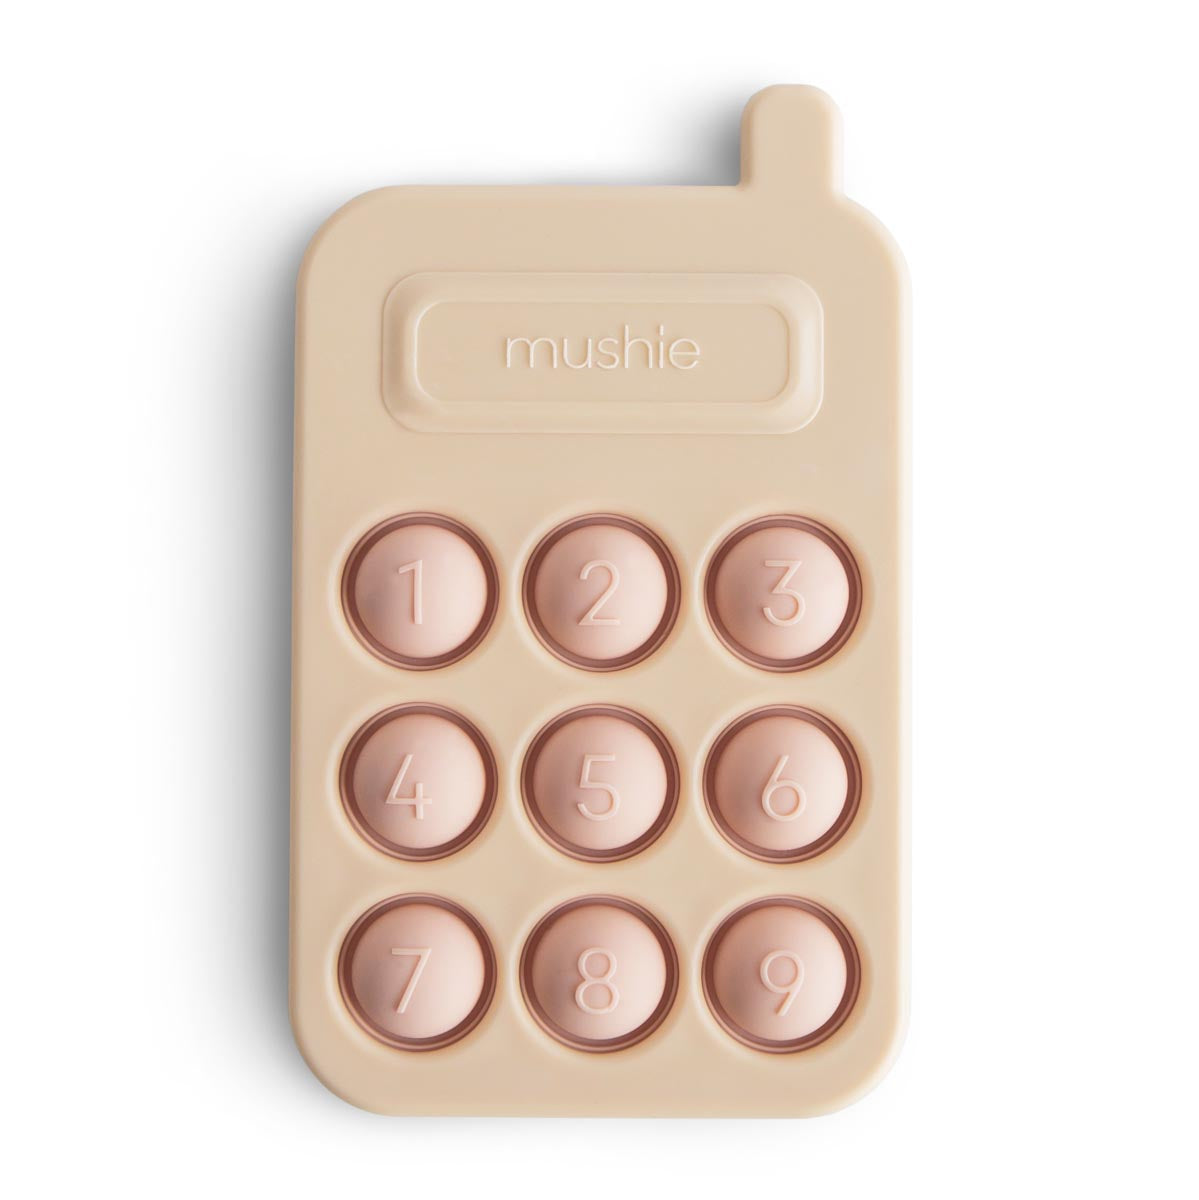 Mushie Phone press Toy